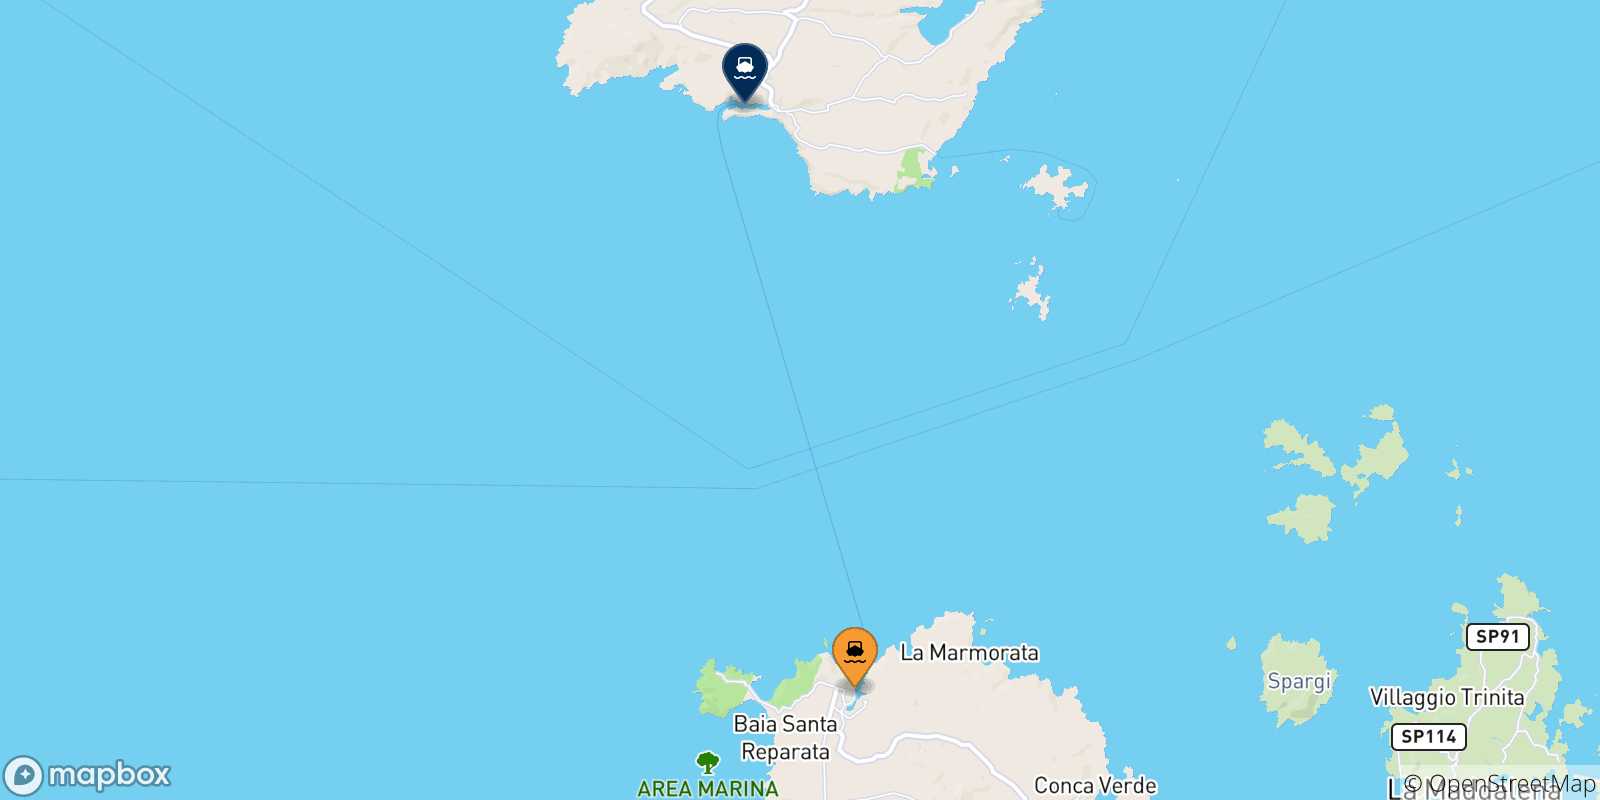 Mappa delle possibili rotte tra Santa Teresa Di Gallura e la Corsica